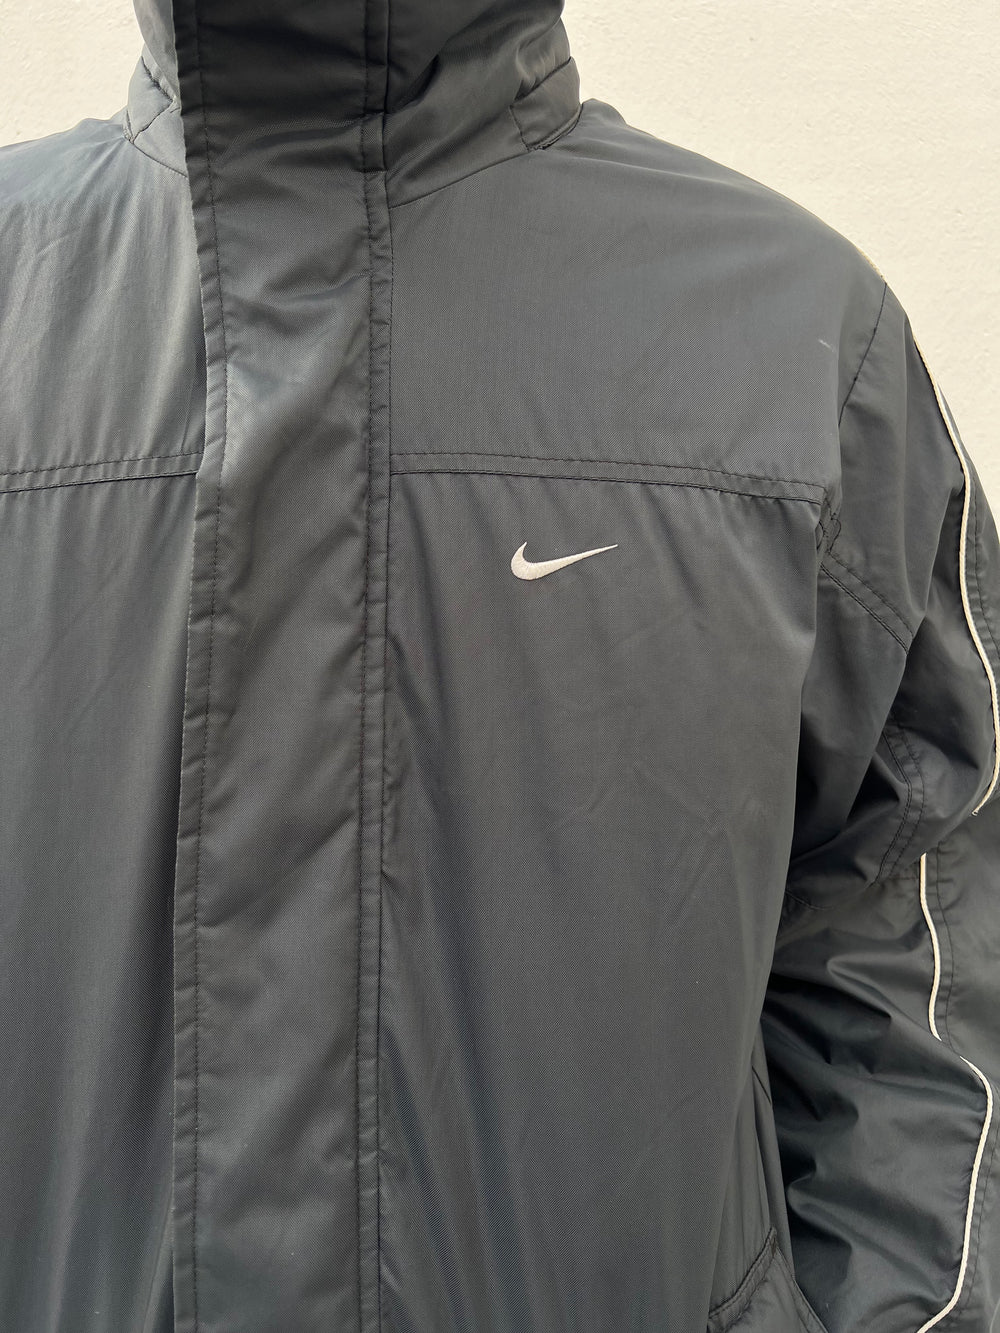 Early 2000s Y2K Heavy Nike Swoosh Jacket (M)